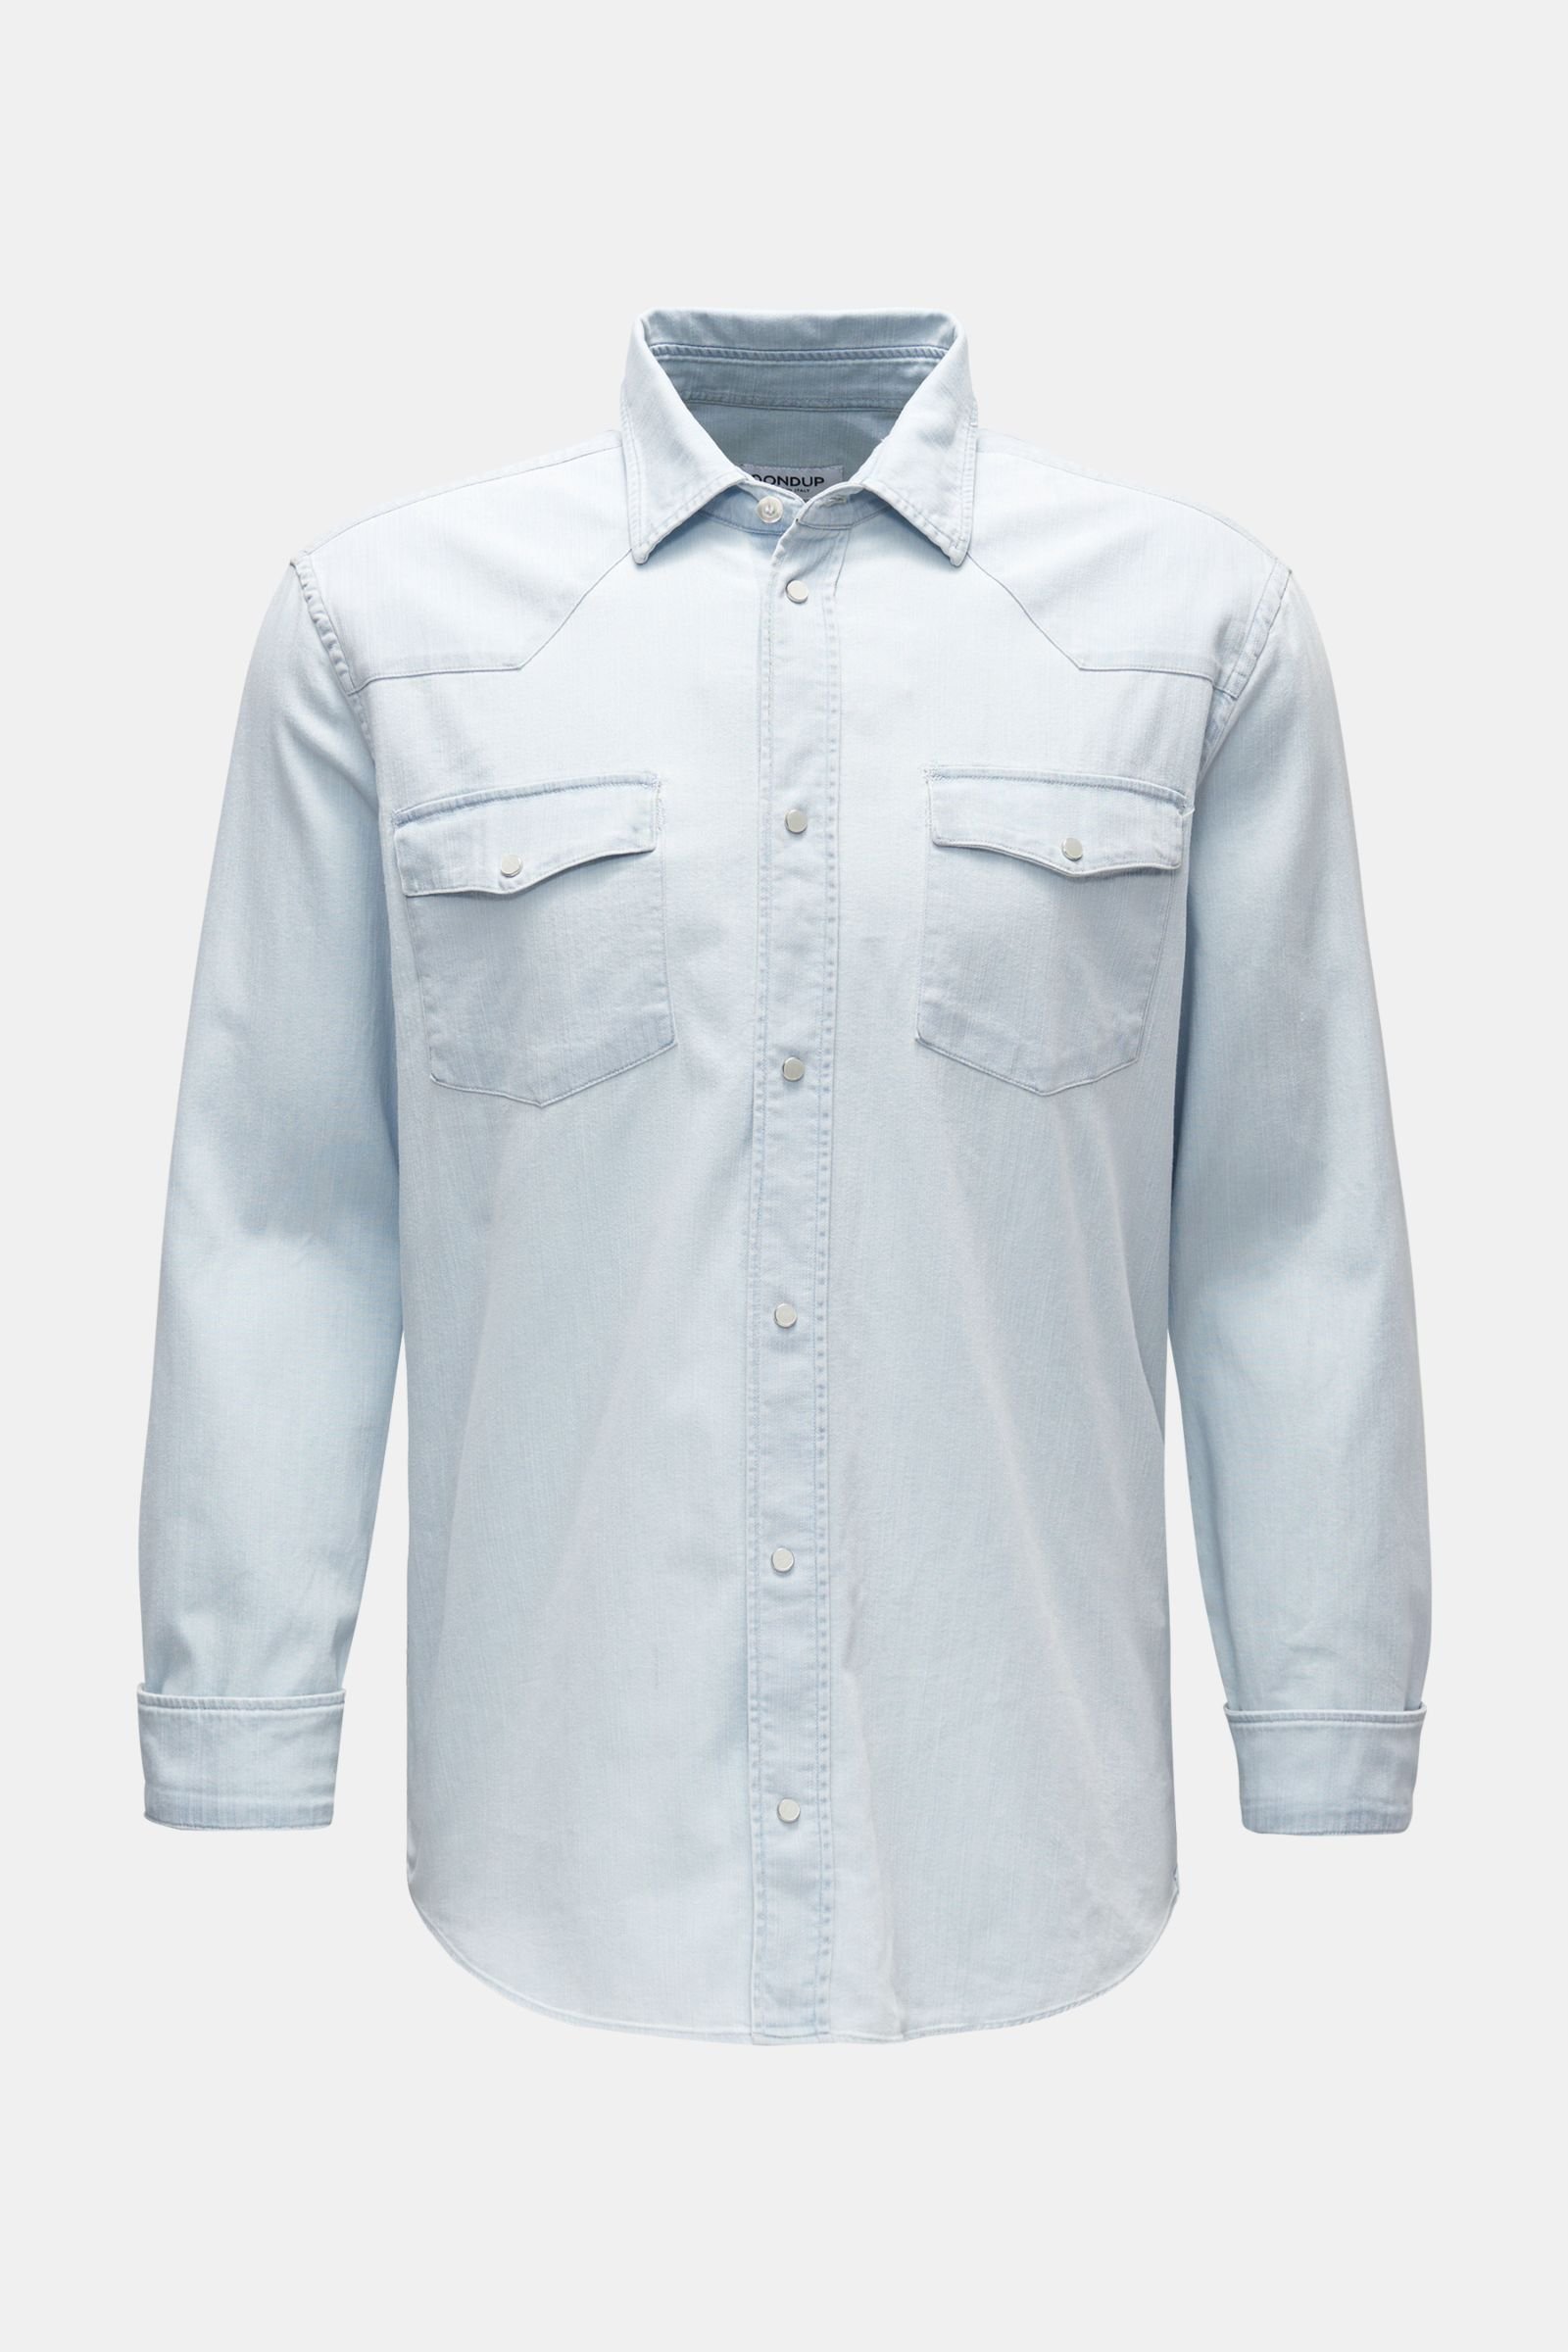 Denim shirt narrow collar light blue